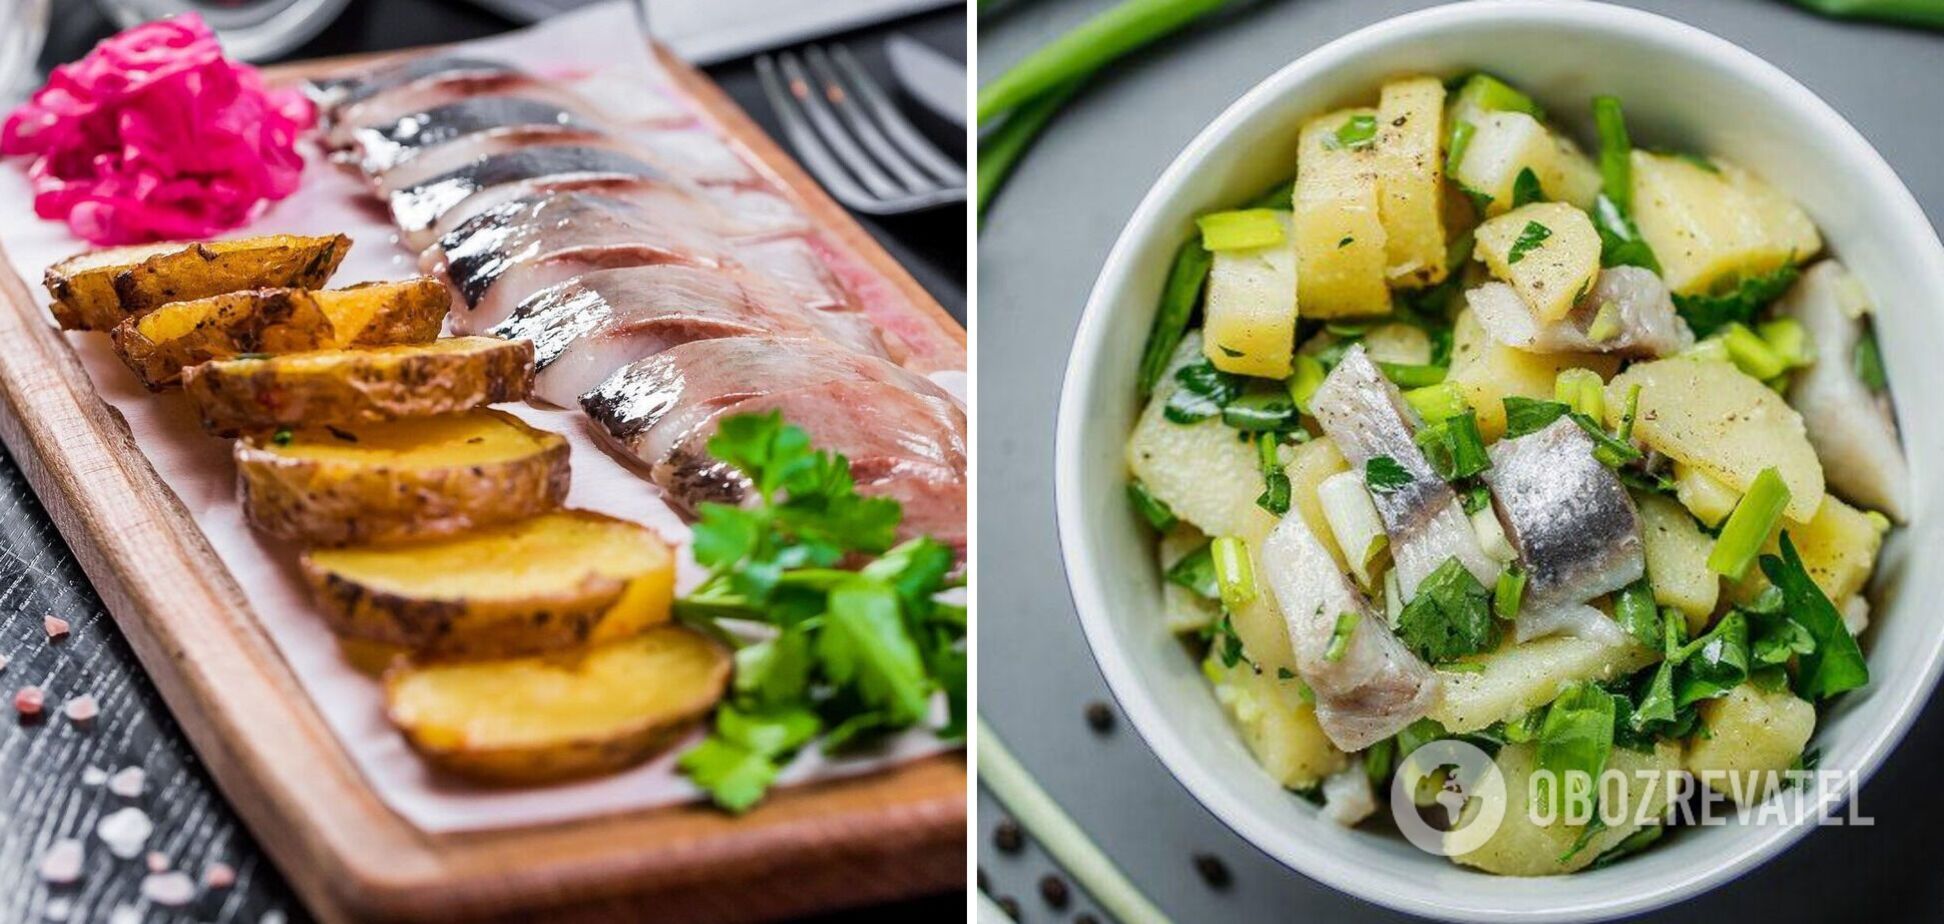 Картофель и сельдь в салате: как интересно подать популярное сочетание